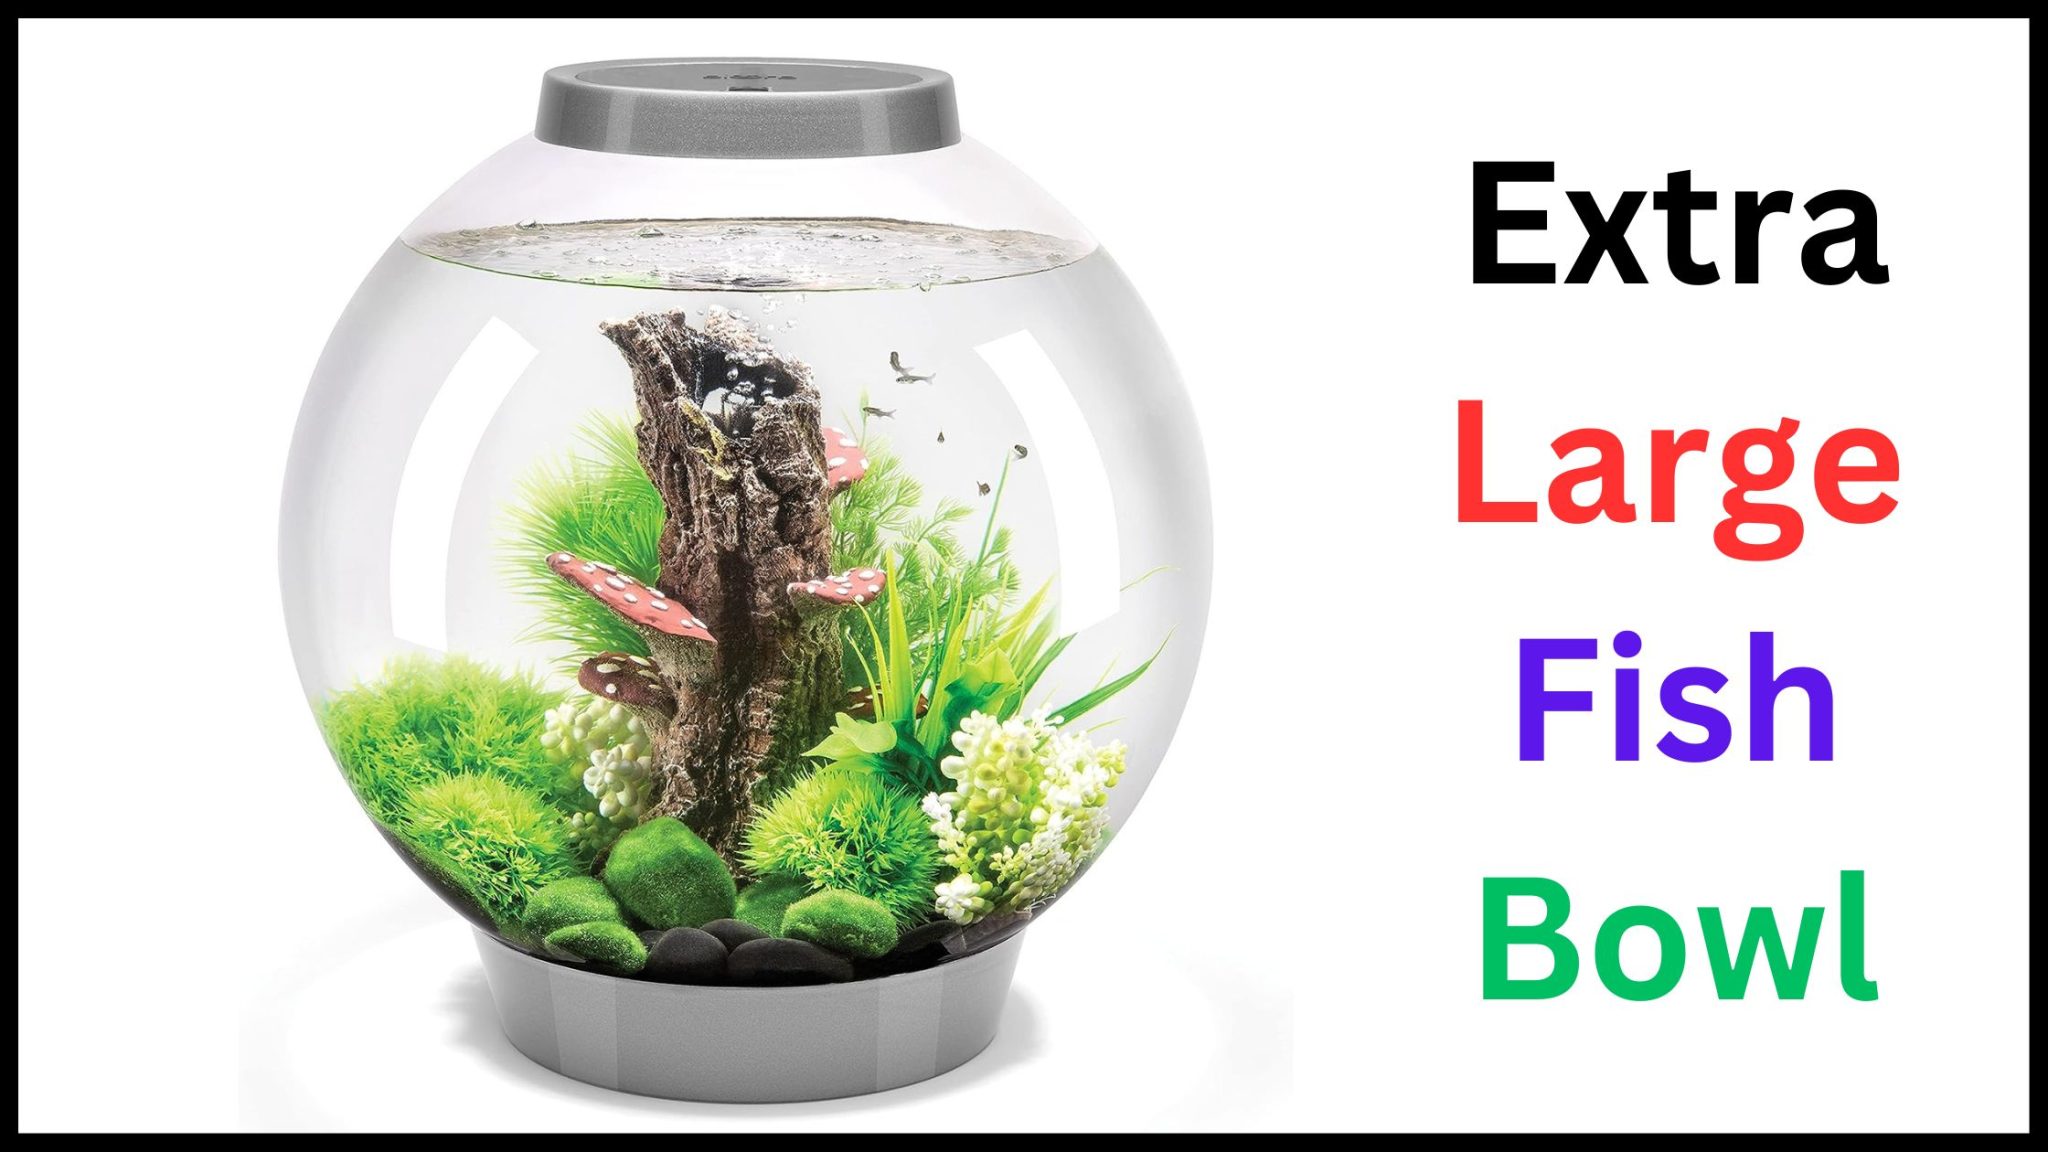 Extra Large Fish Bowl